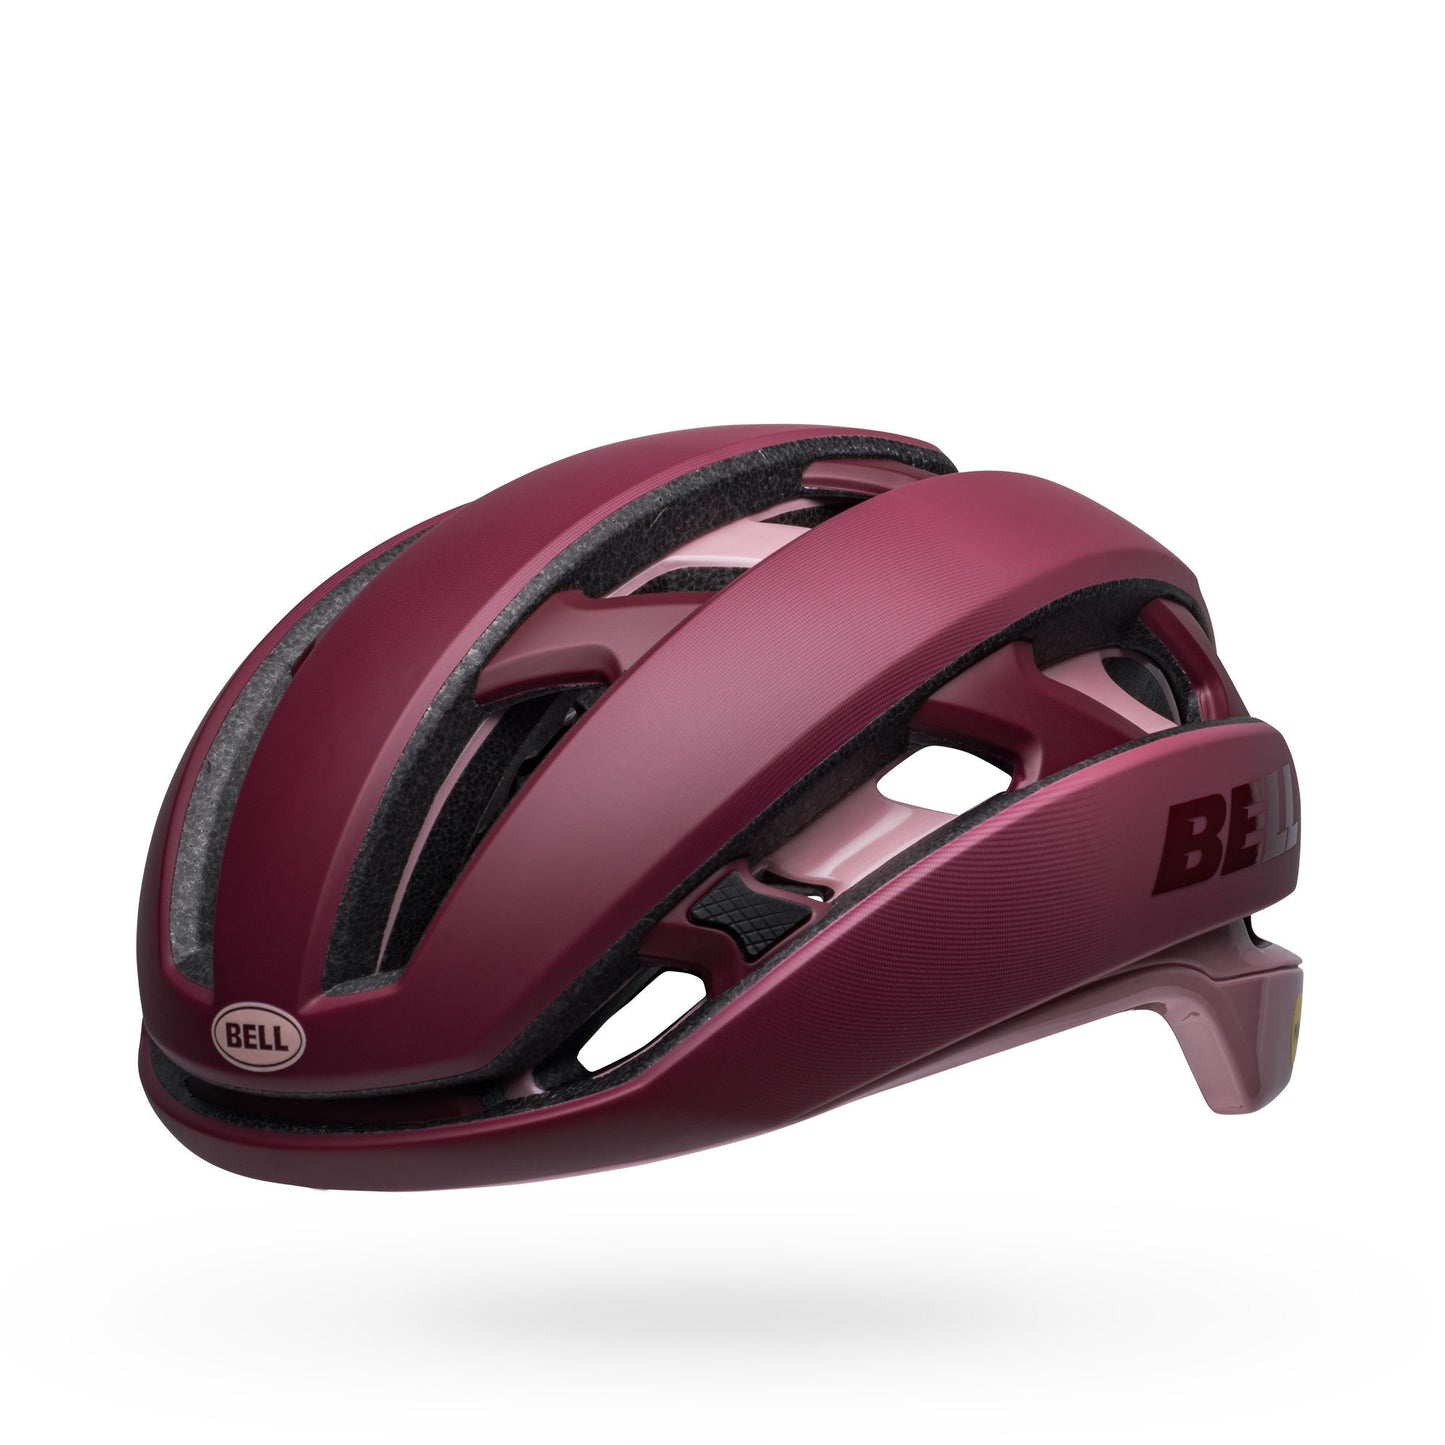 Bell XR Spherical Helmet Matte Gloss Pinks Bike Helmets